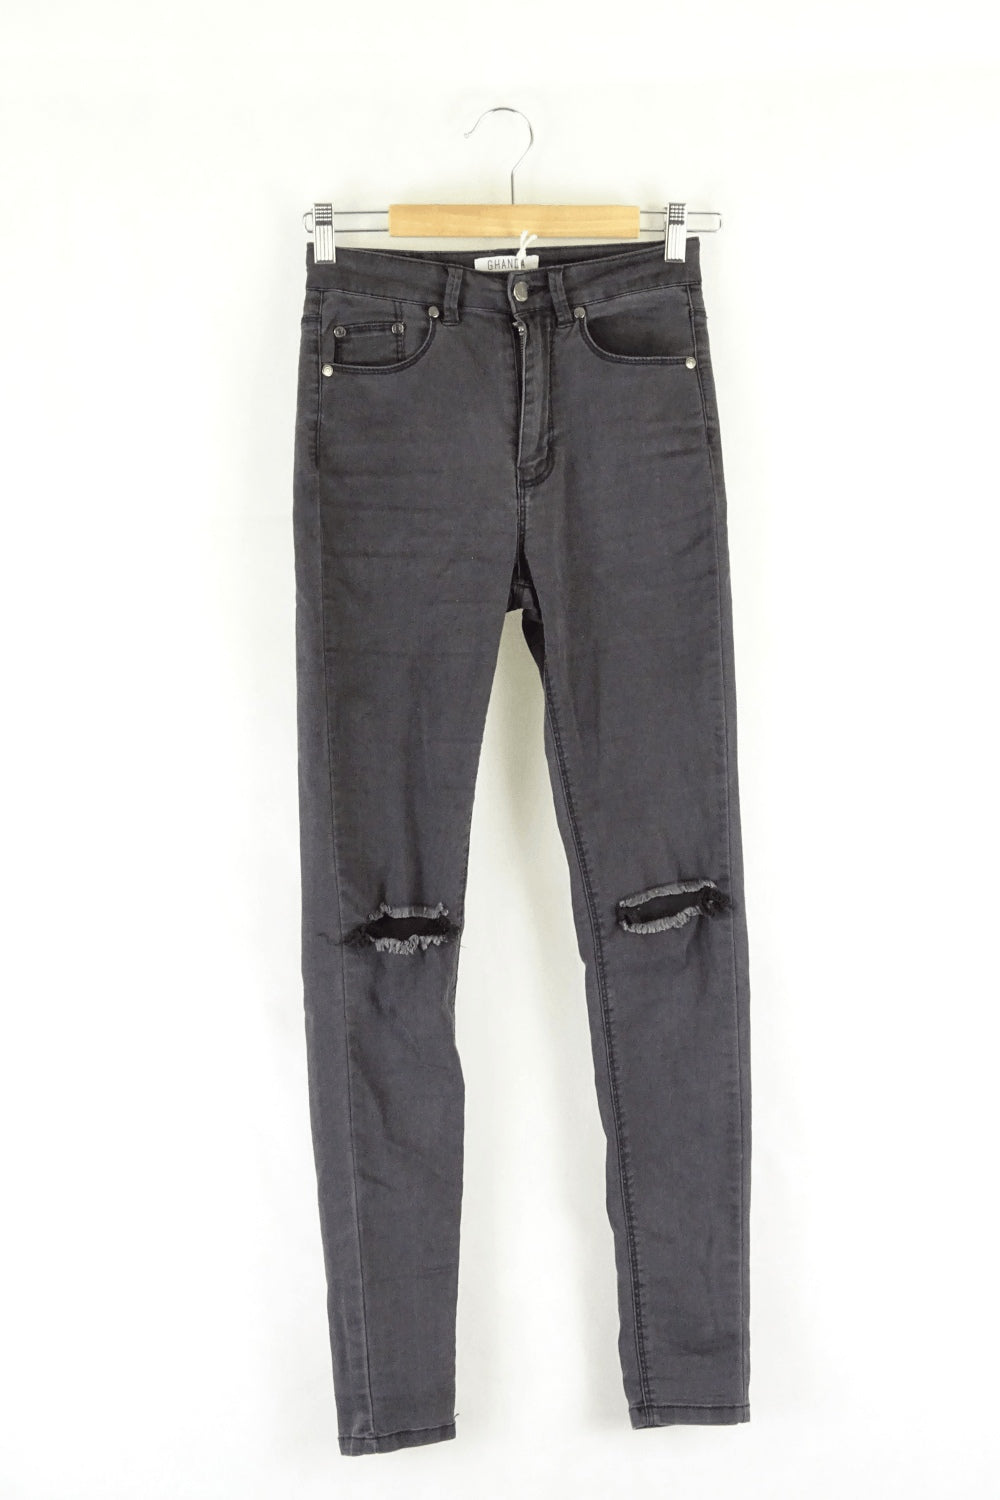 Ghanda Black Ripped Denin Jeans 6